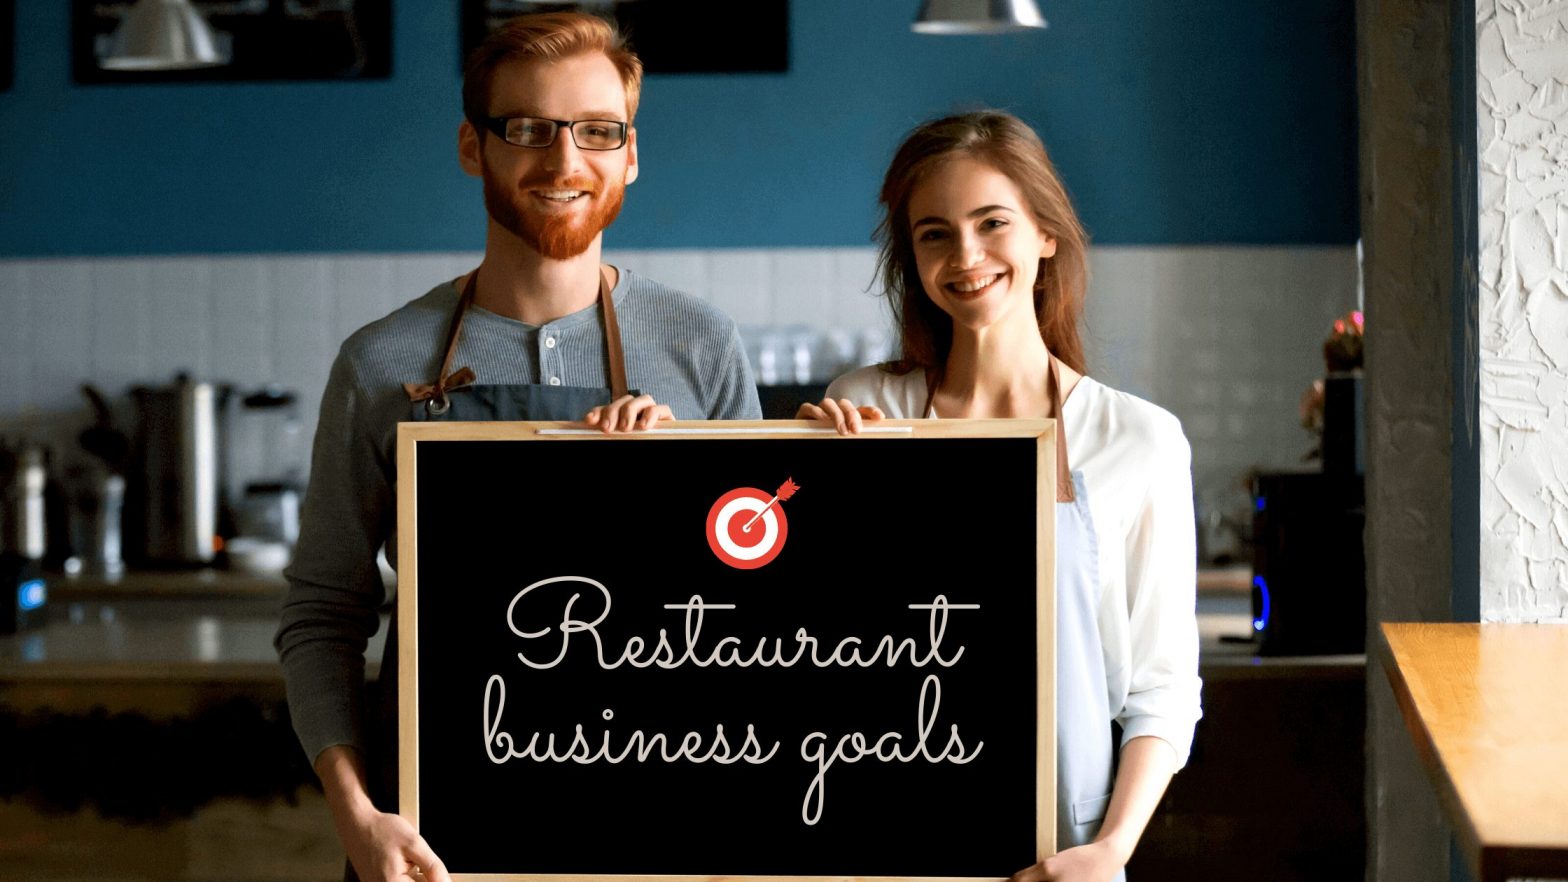 Restaurant business goals & objectives